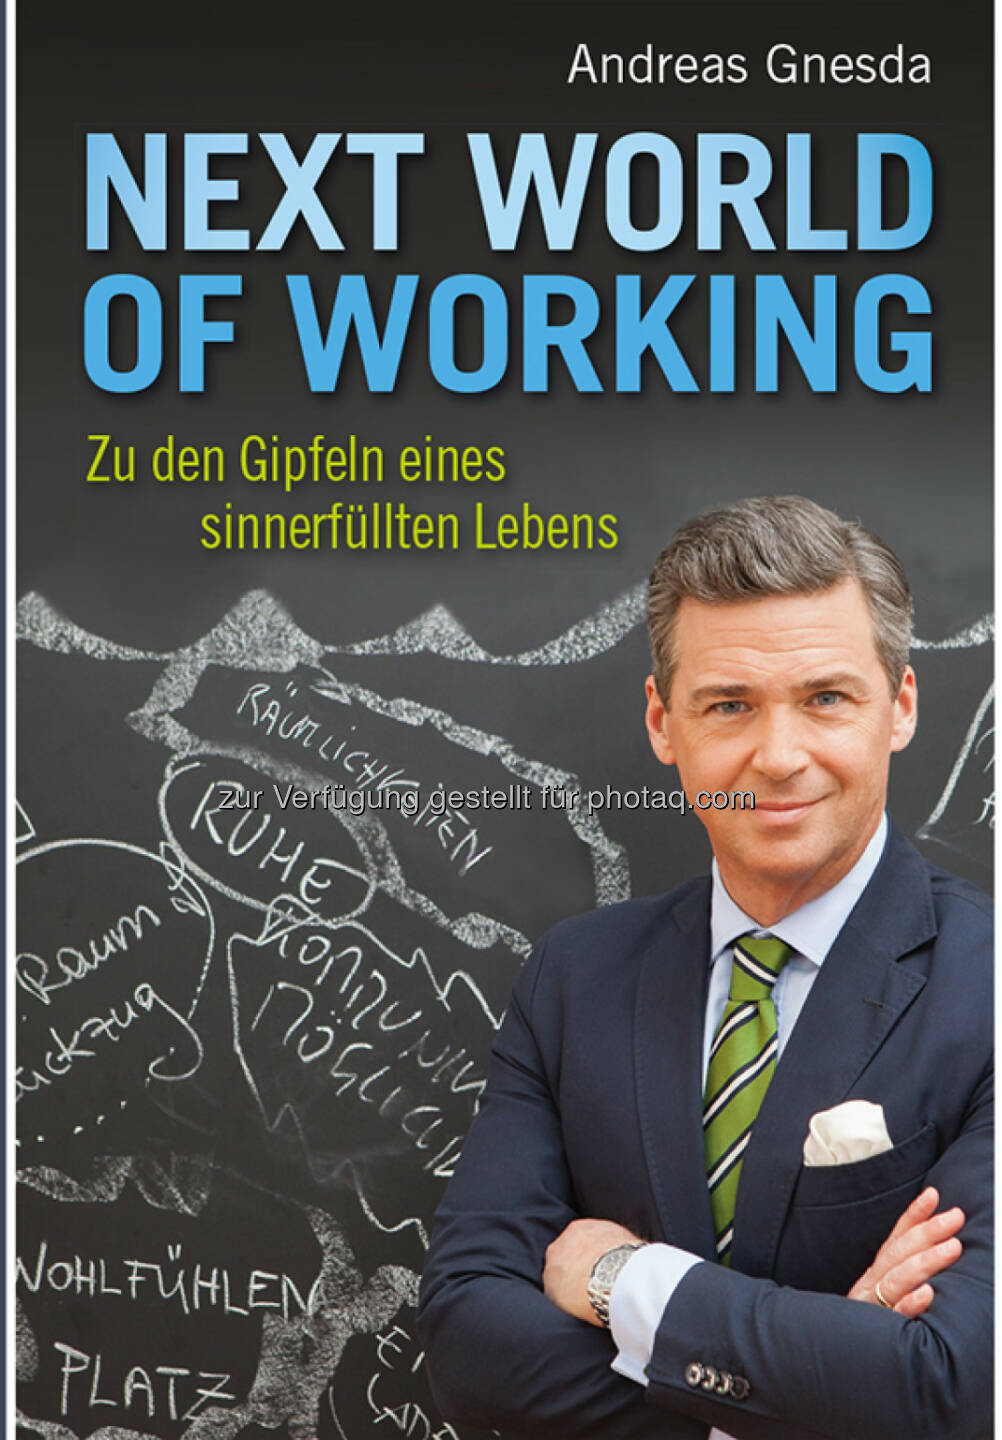 Buchcover Andreas Gnesda - Next World of Working : Zu den Gipfeln eines sinnerfüllten Lebens : Fotocredit: Teamgnesda/Schramm